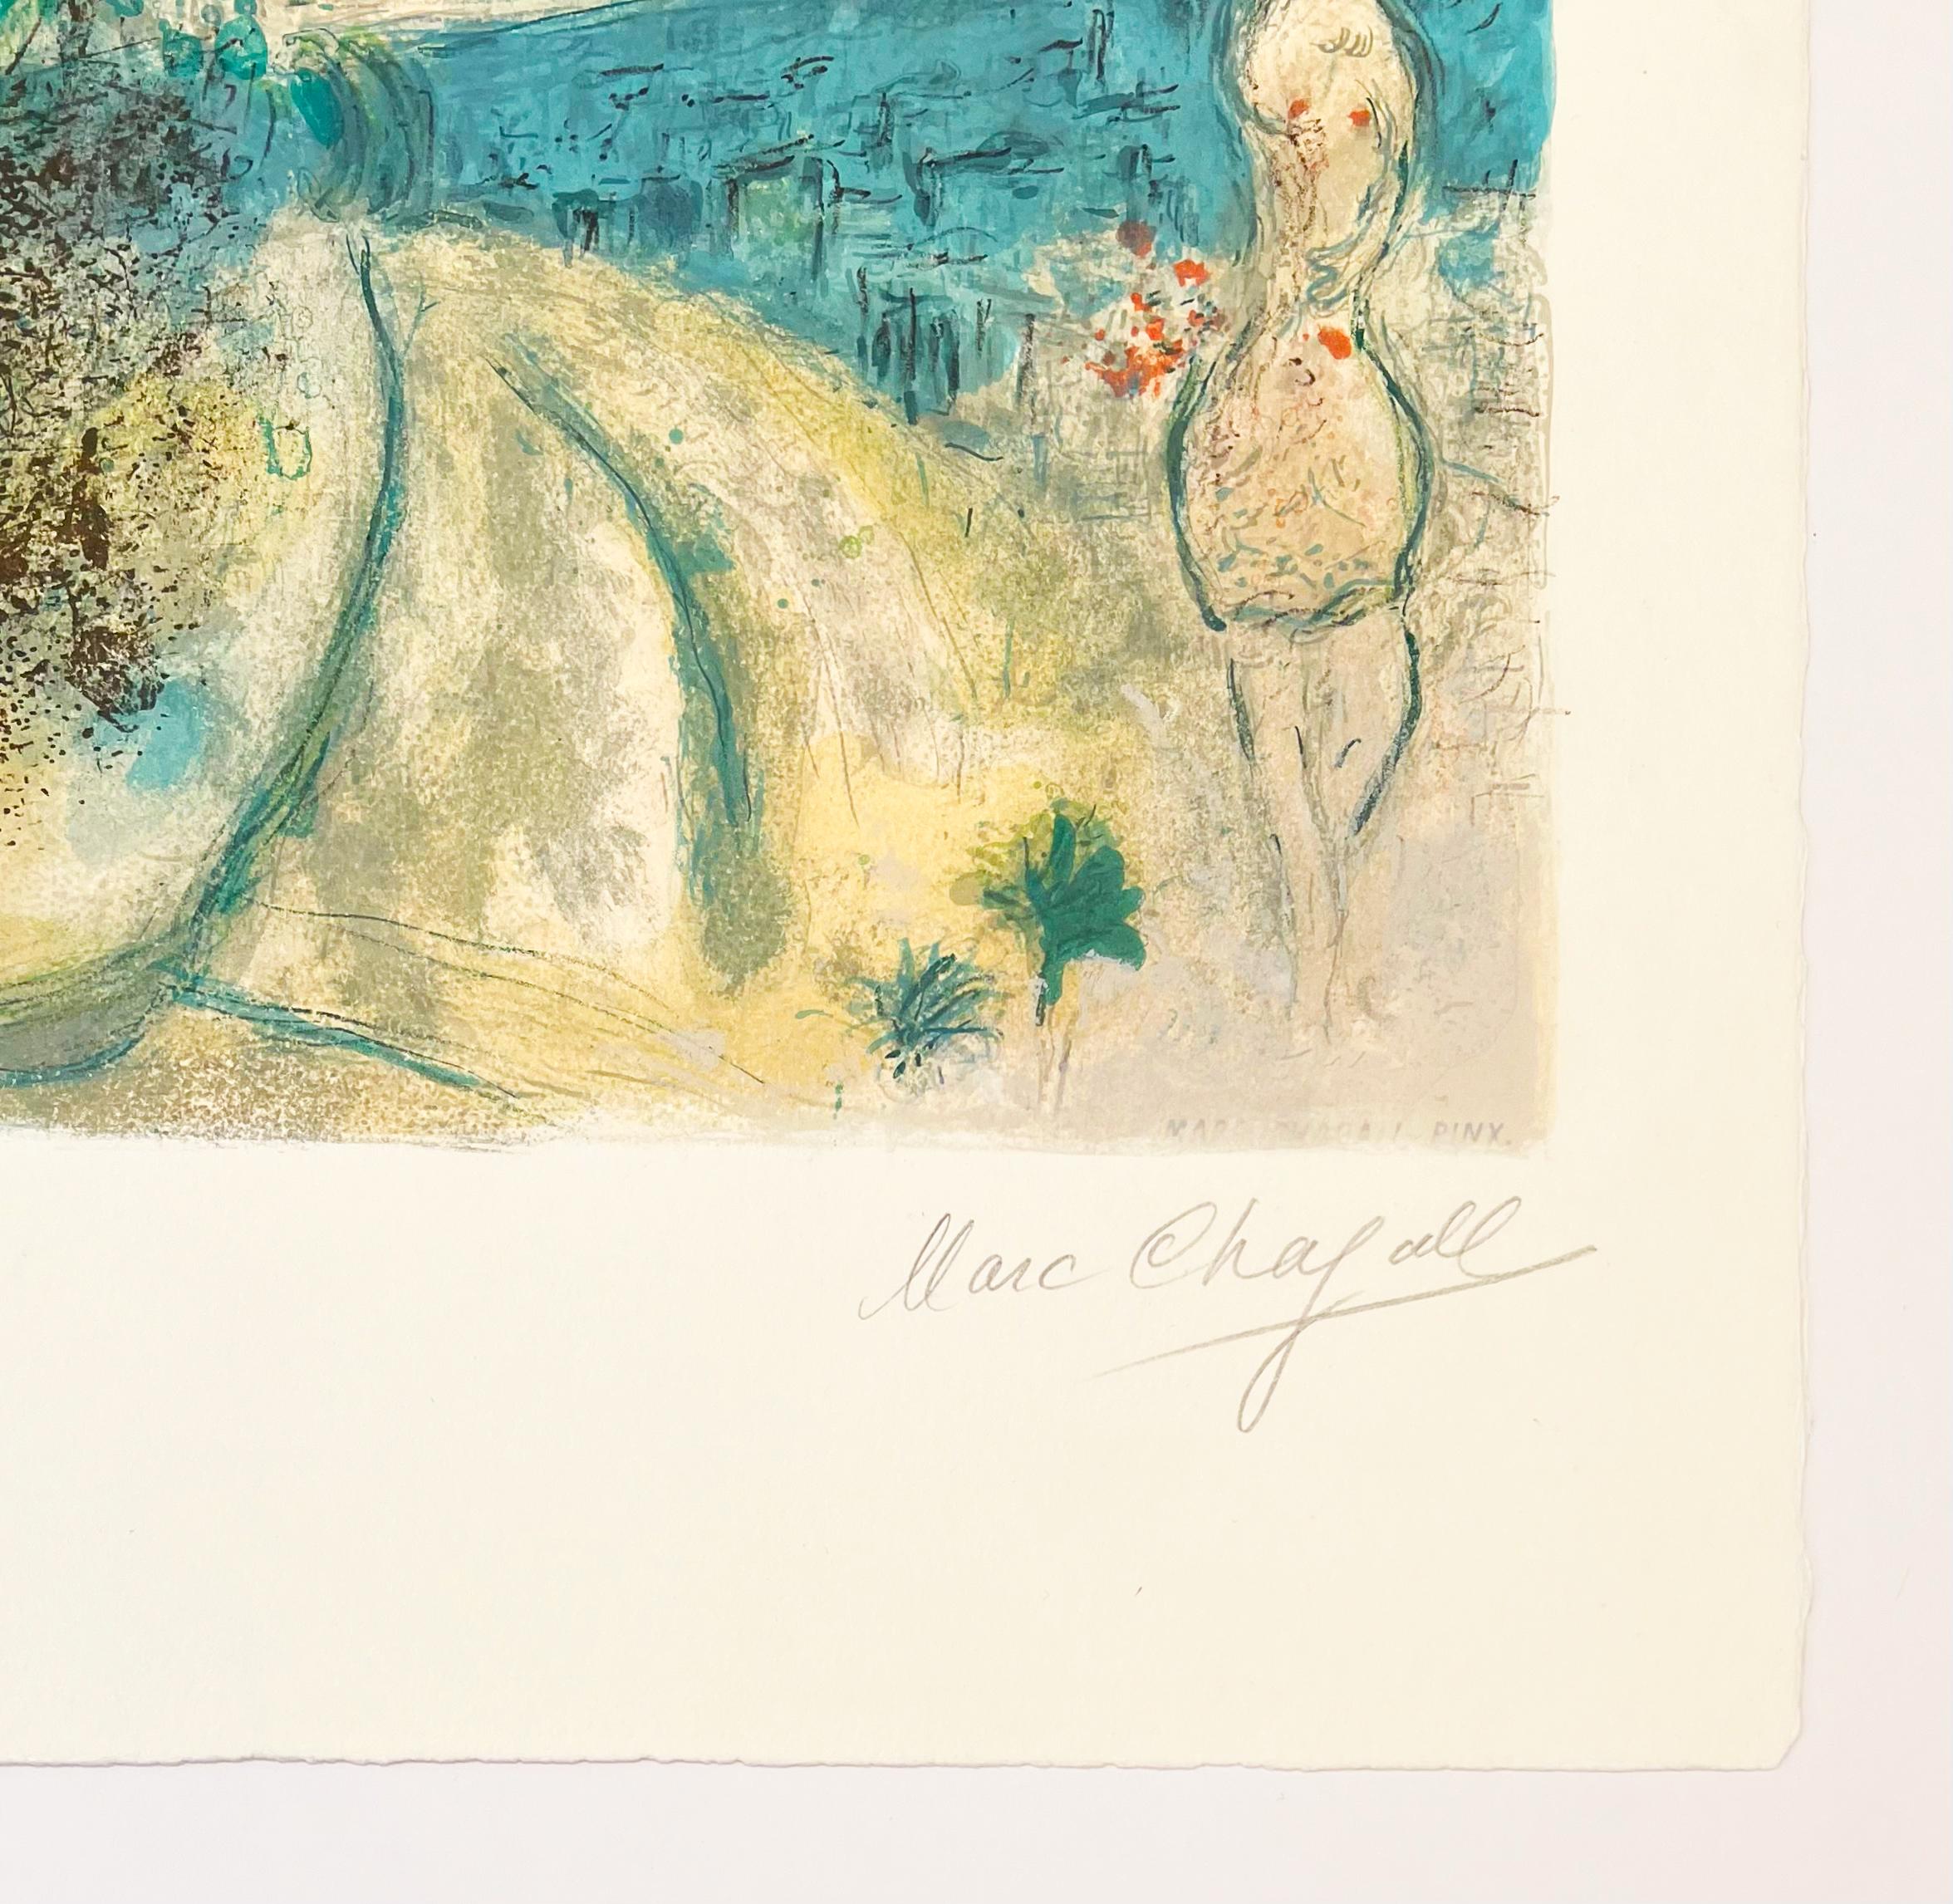 Artistics : Marc Chagall (d'après)
Titre : Roses et Mimosa
Portfolio : Nice et la Côte d'Azur
Médium : Lithographie
Date : 1967
Edition : 149/150
Taille du cadre : 37 1/2